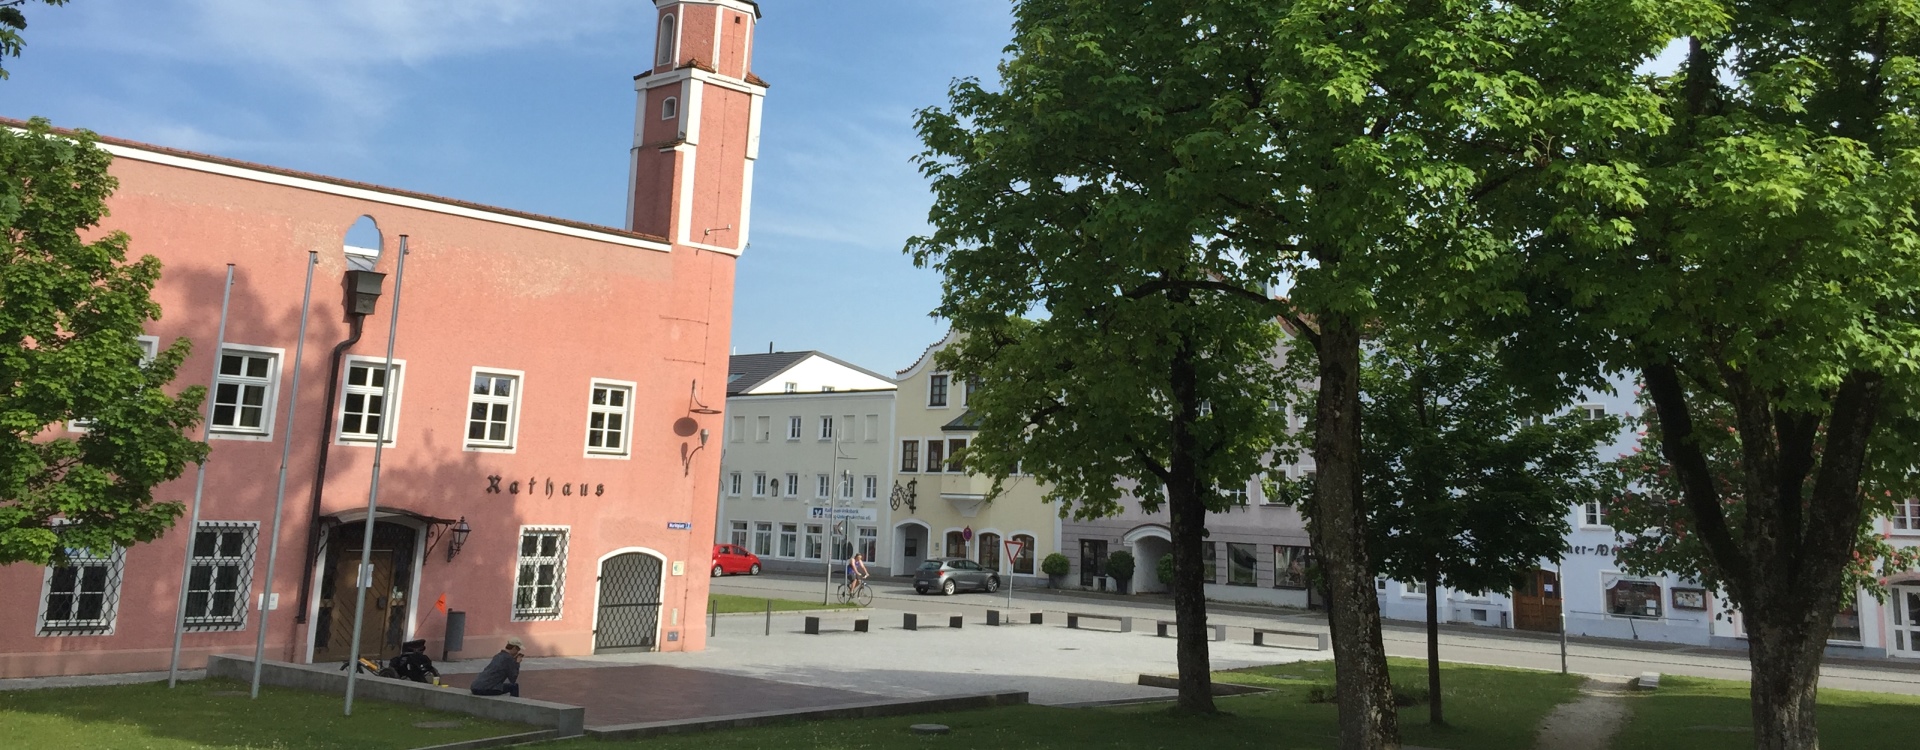 Hier sieht man das Rathaus in Tüssling